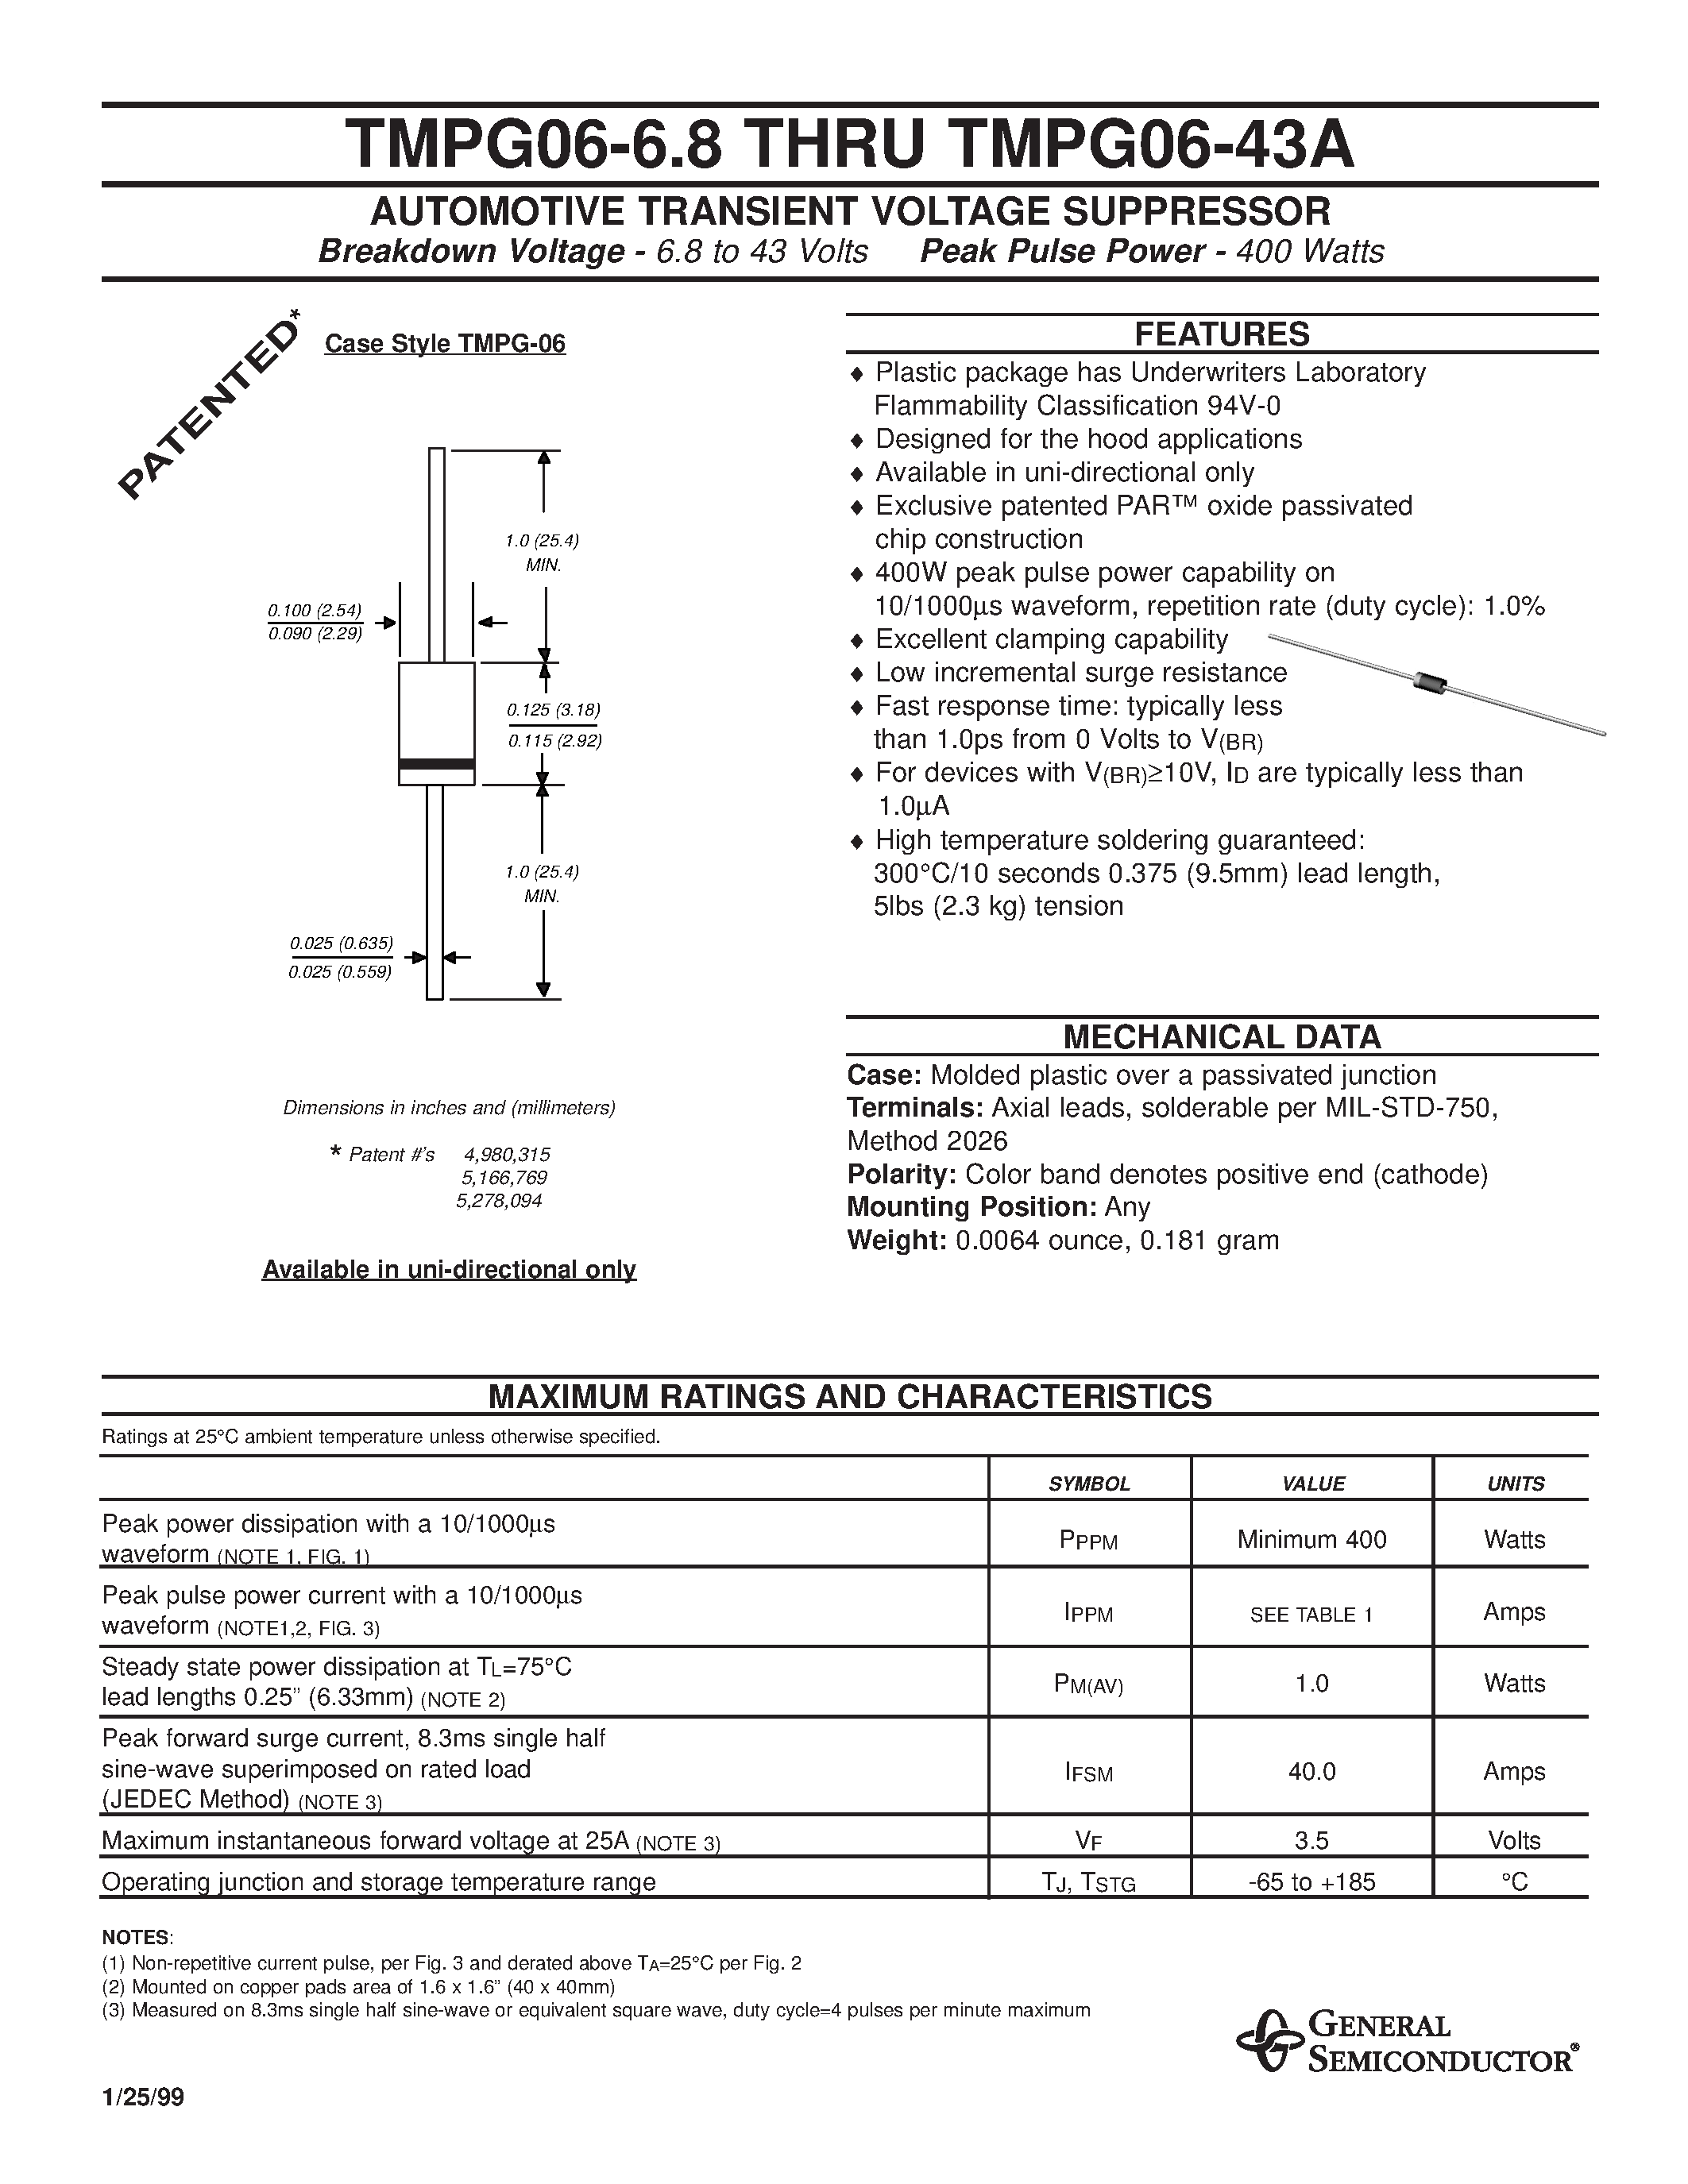 Datasheet TMPG06-6.8 - AUTOMOTIVE TRANSIENT VOLTAGE SUPPRESSOR page 1